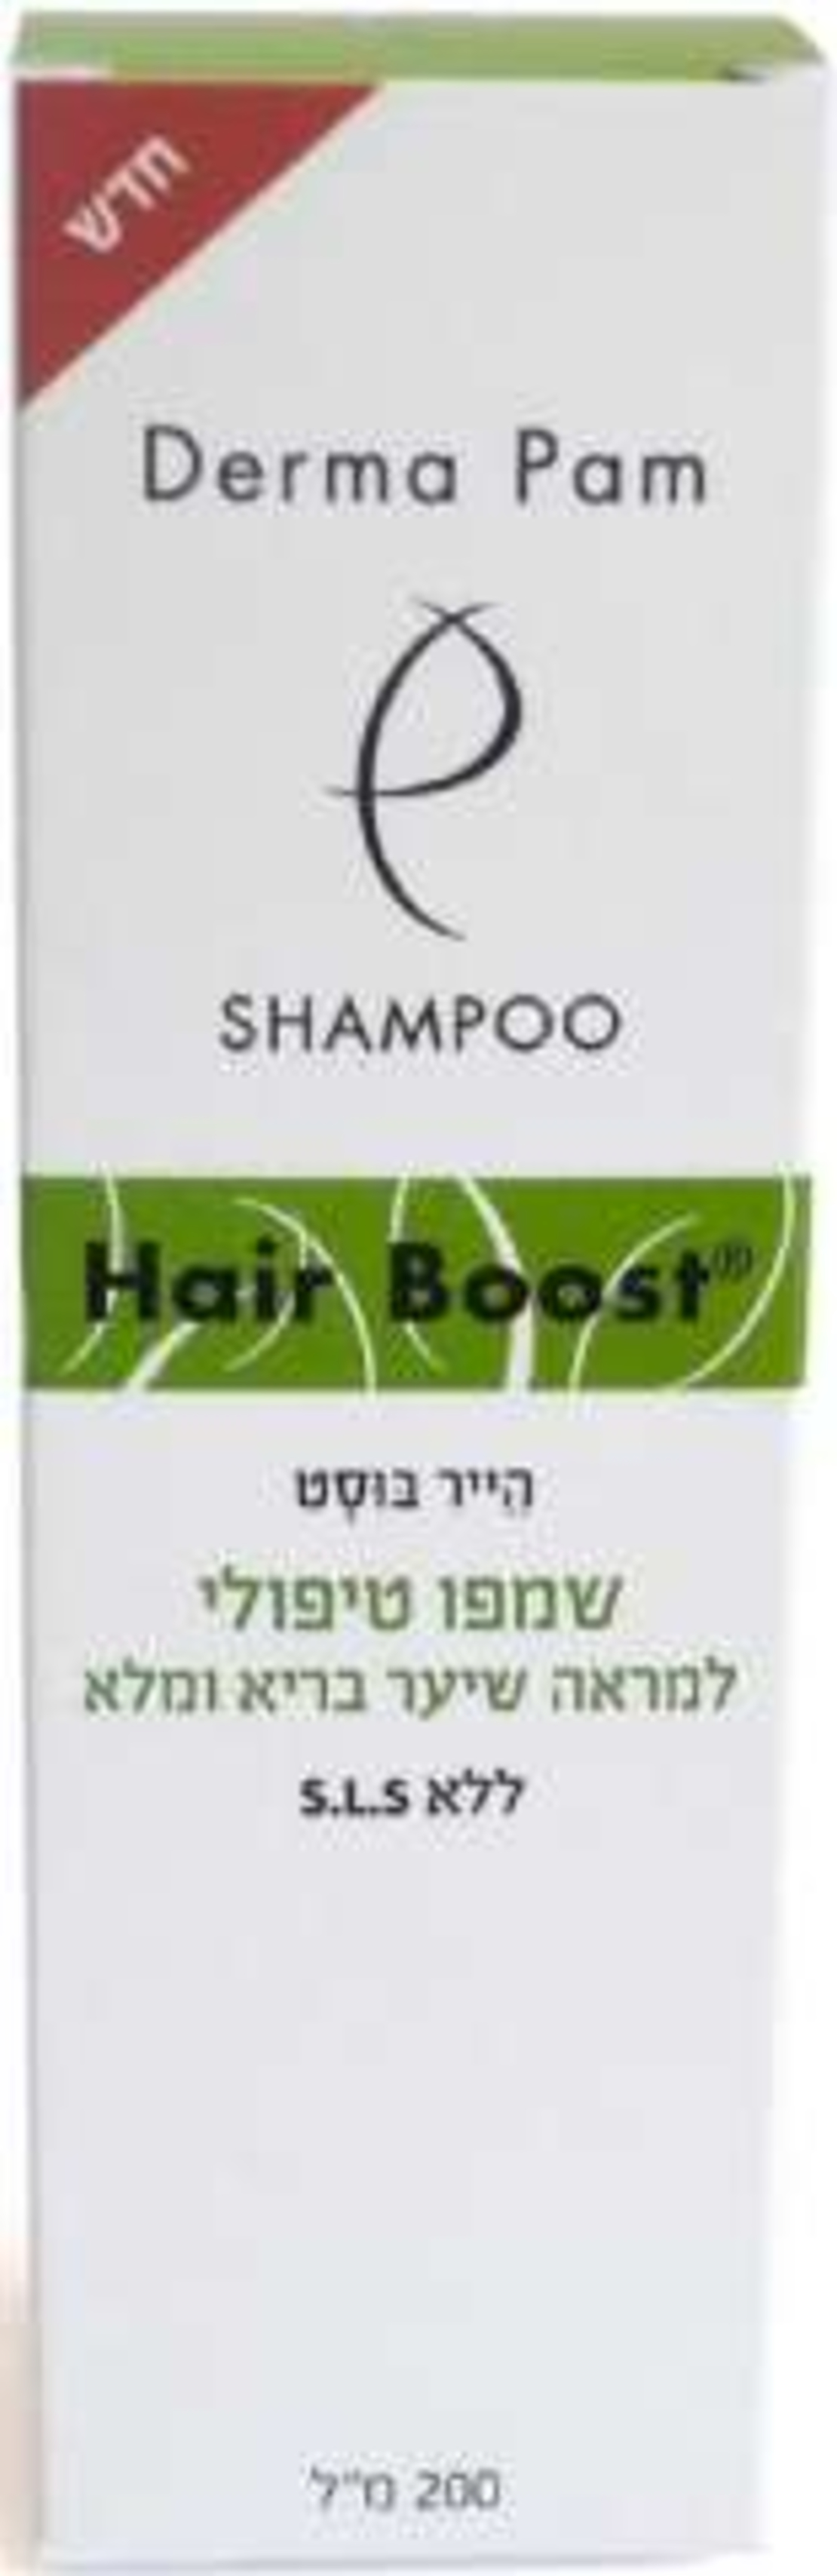 הייר בוסט שמפו - לשיער דליל Hair Boost Shampoo